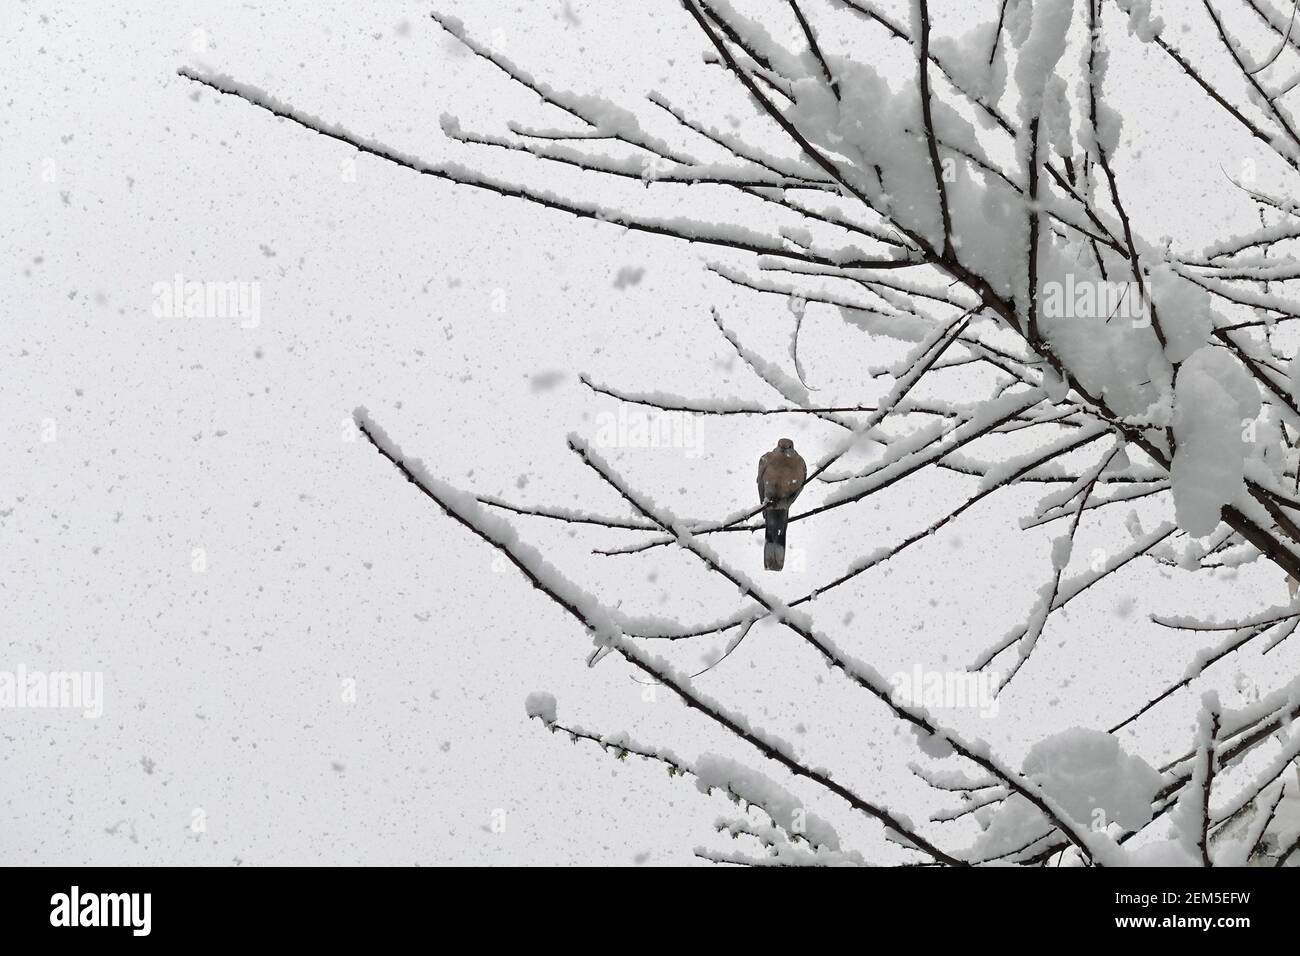 Taubenvogel, der während des Schneesturms auf Baumzweigen thront. Kalter Wintertag. Stockfoto